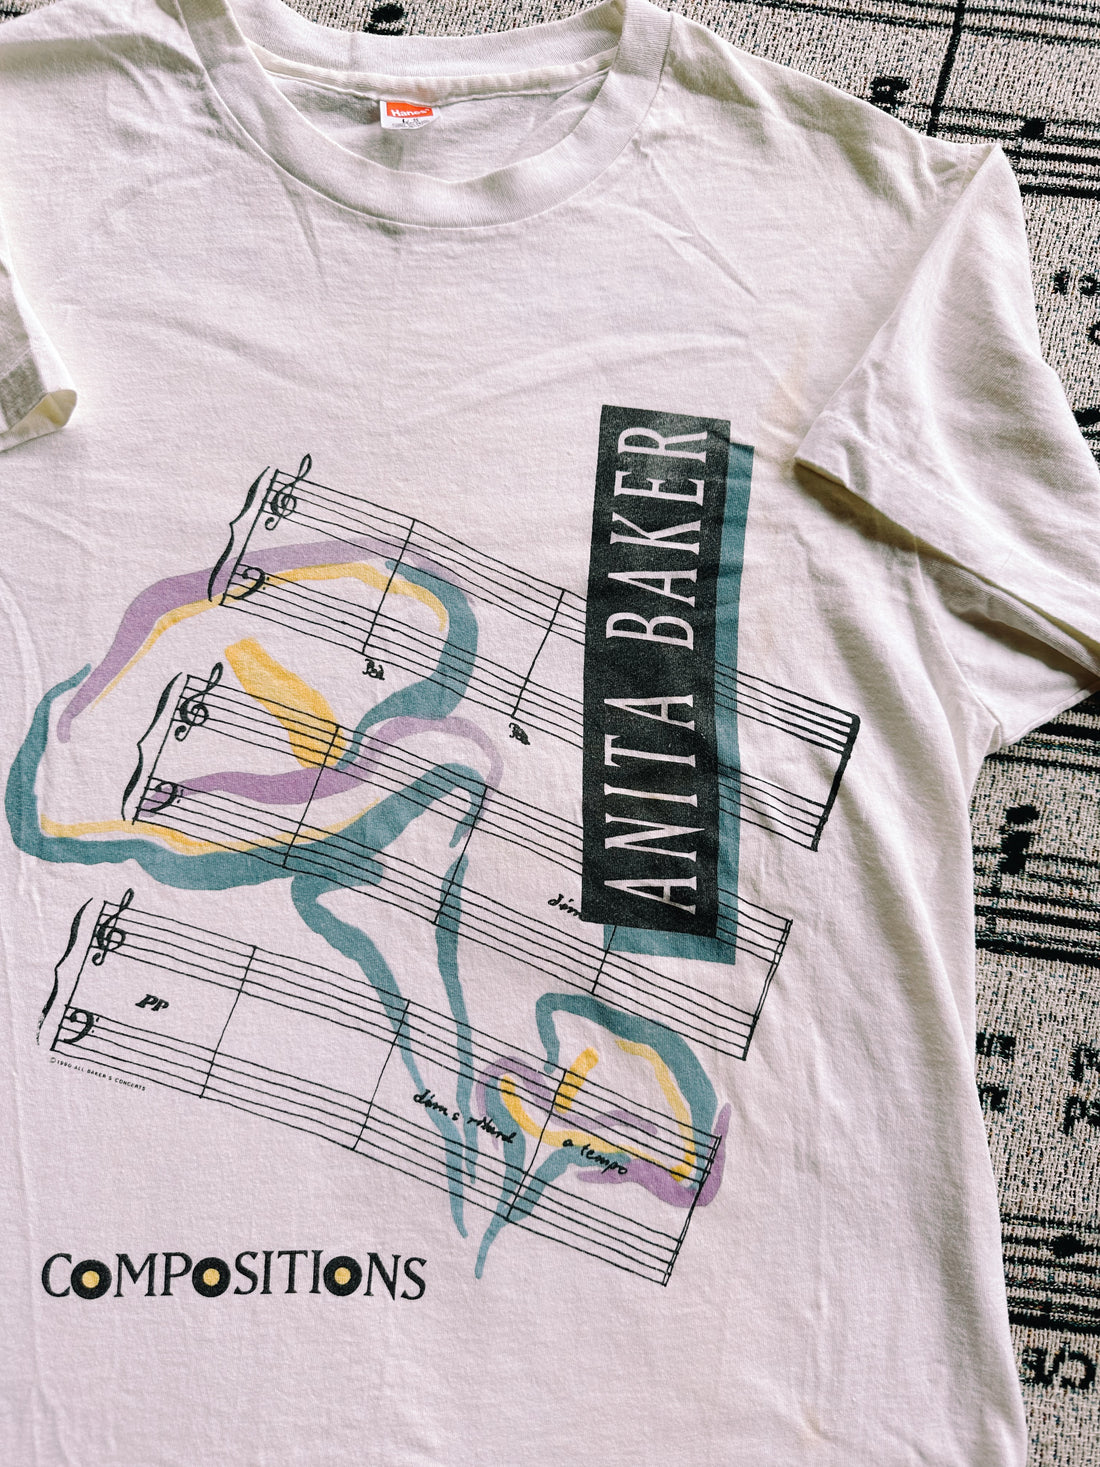 Vintage Anita Baker Concert T-shirt (1990)